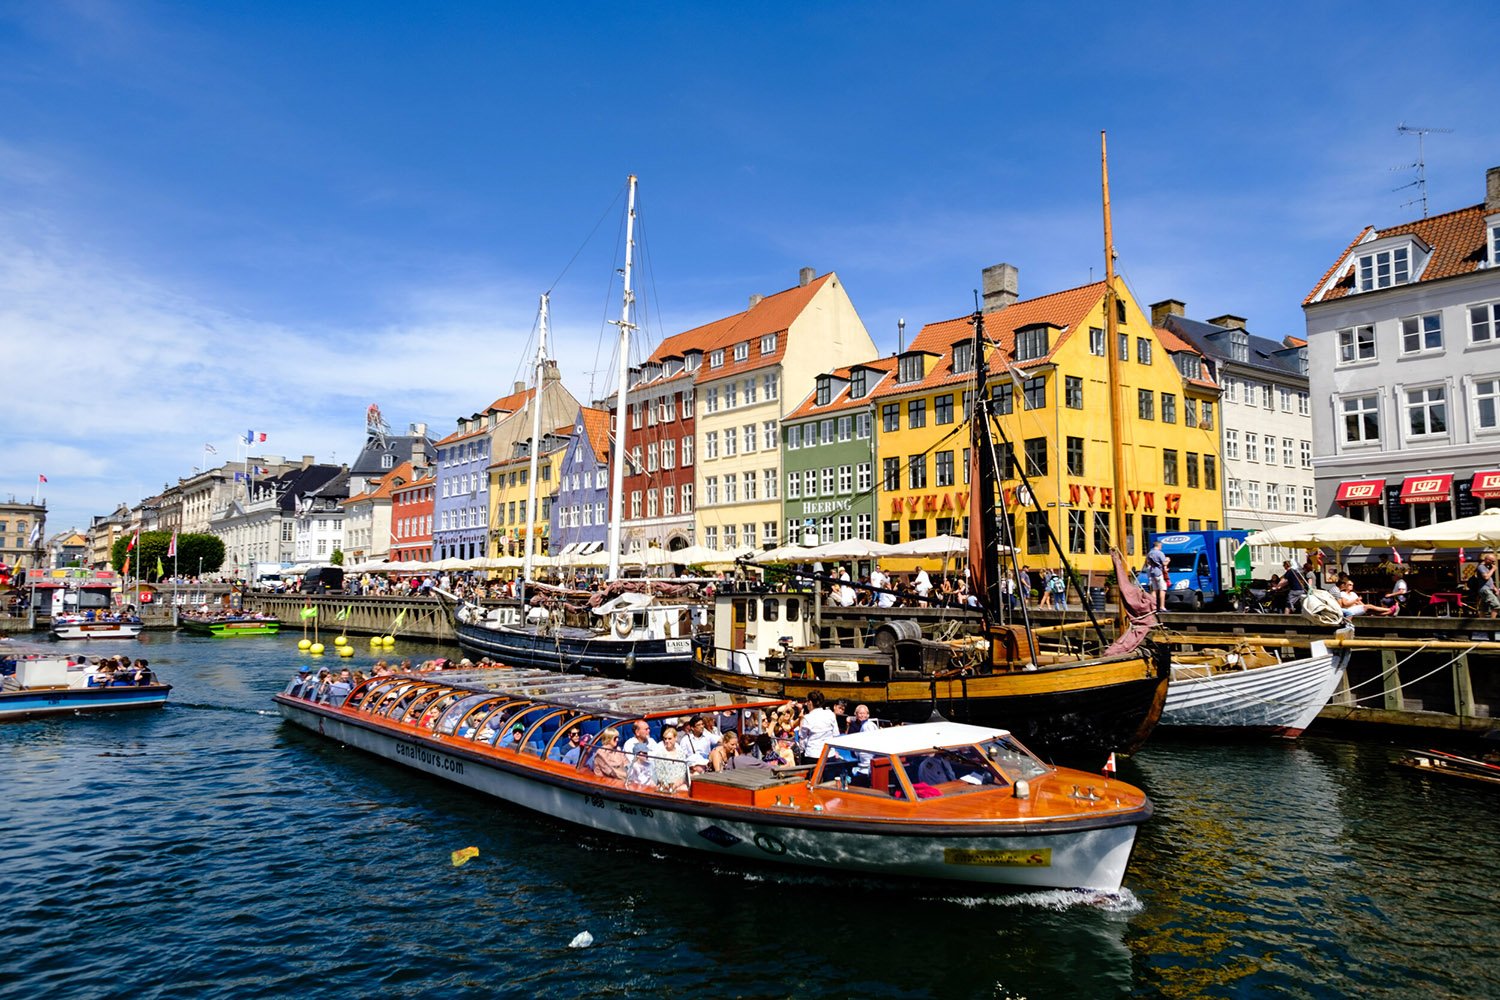 Tour boat at Nyhavn